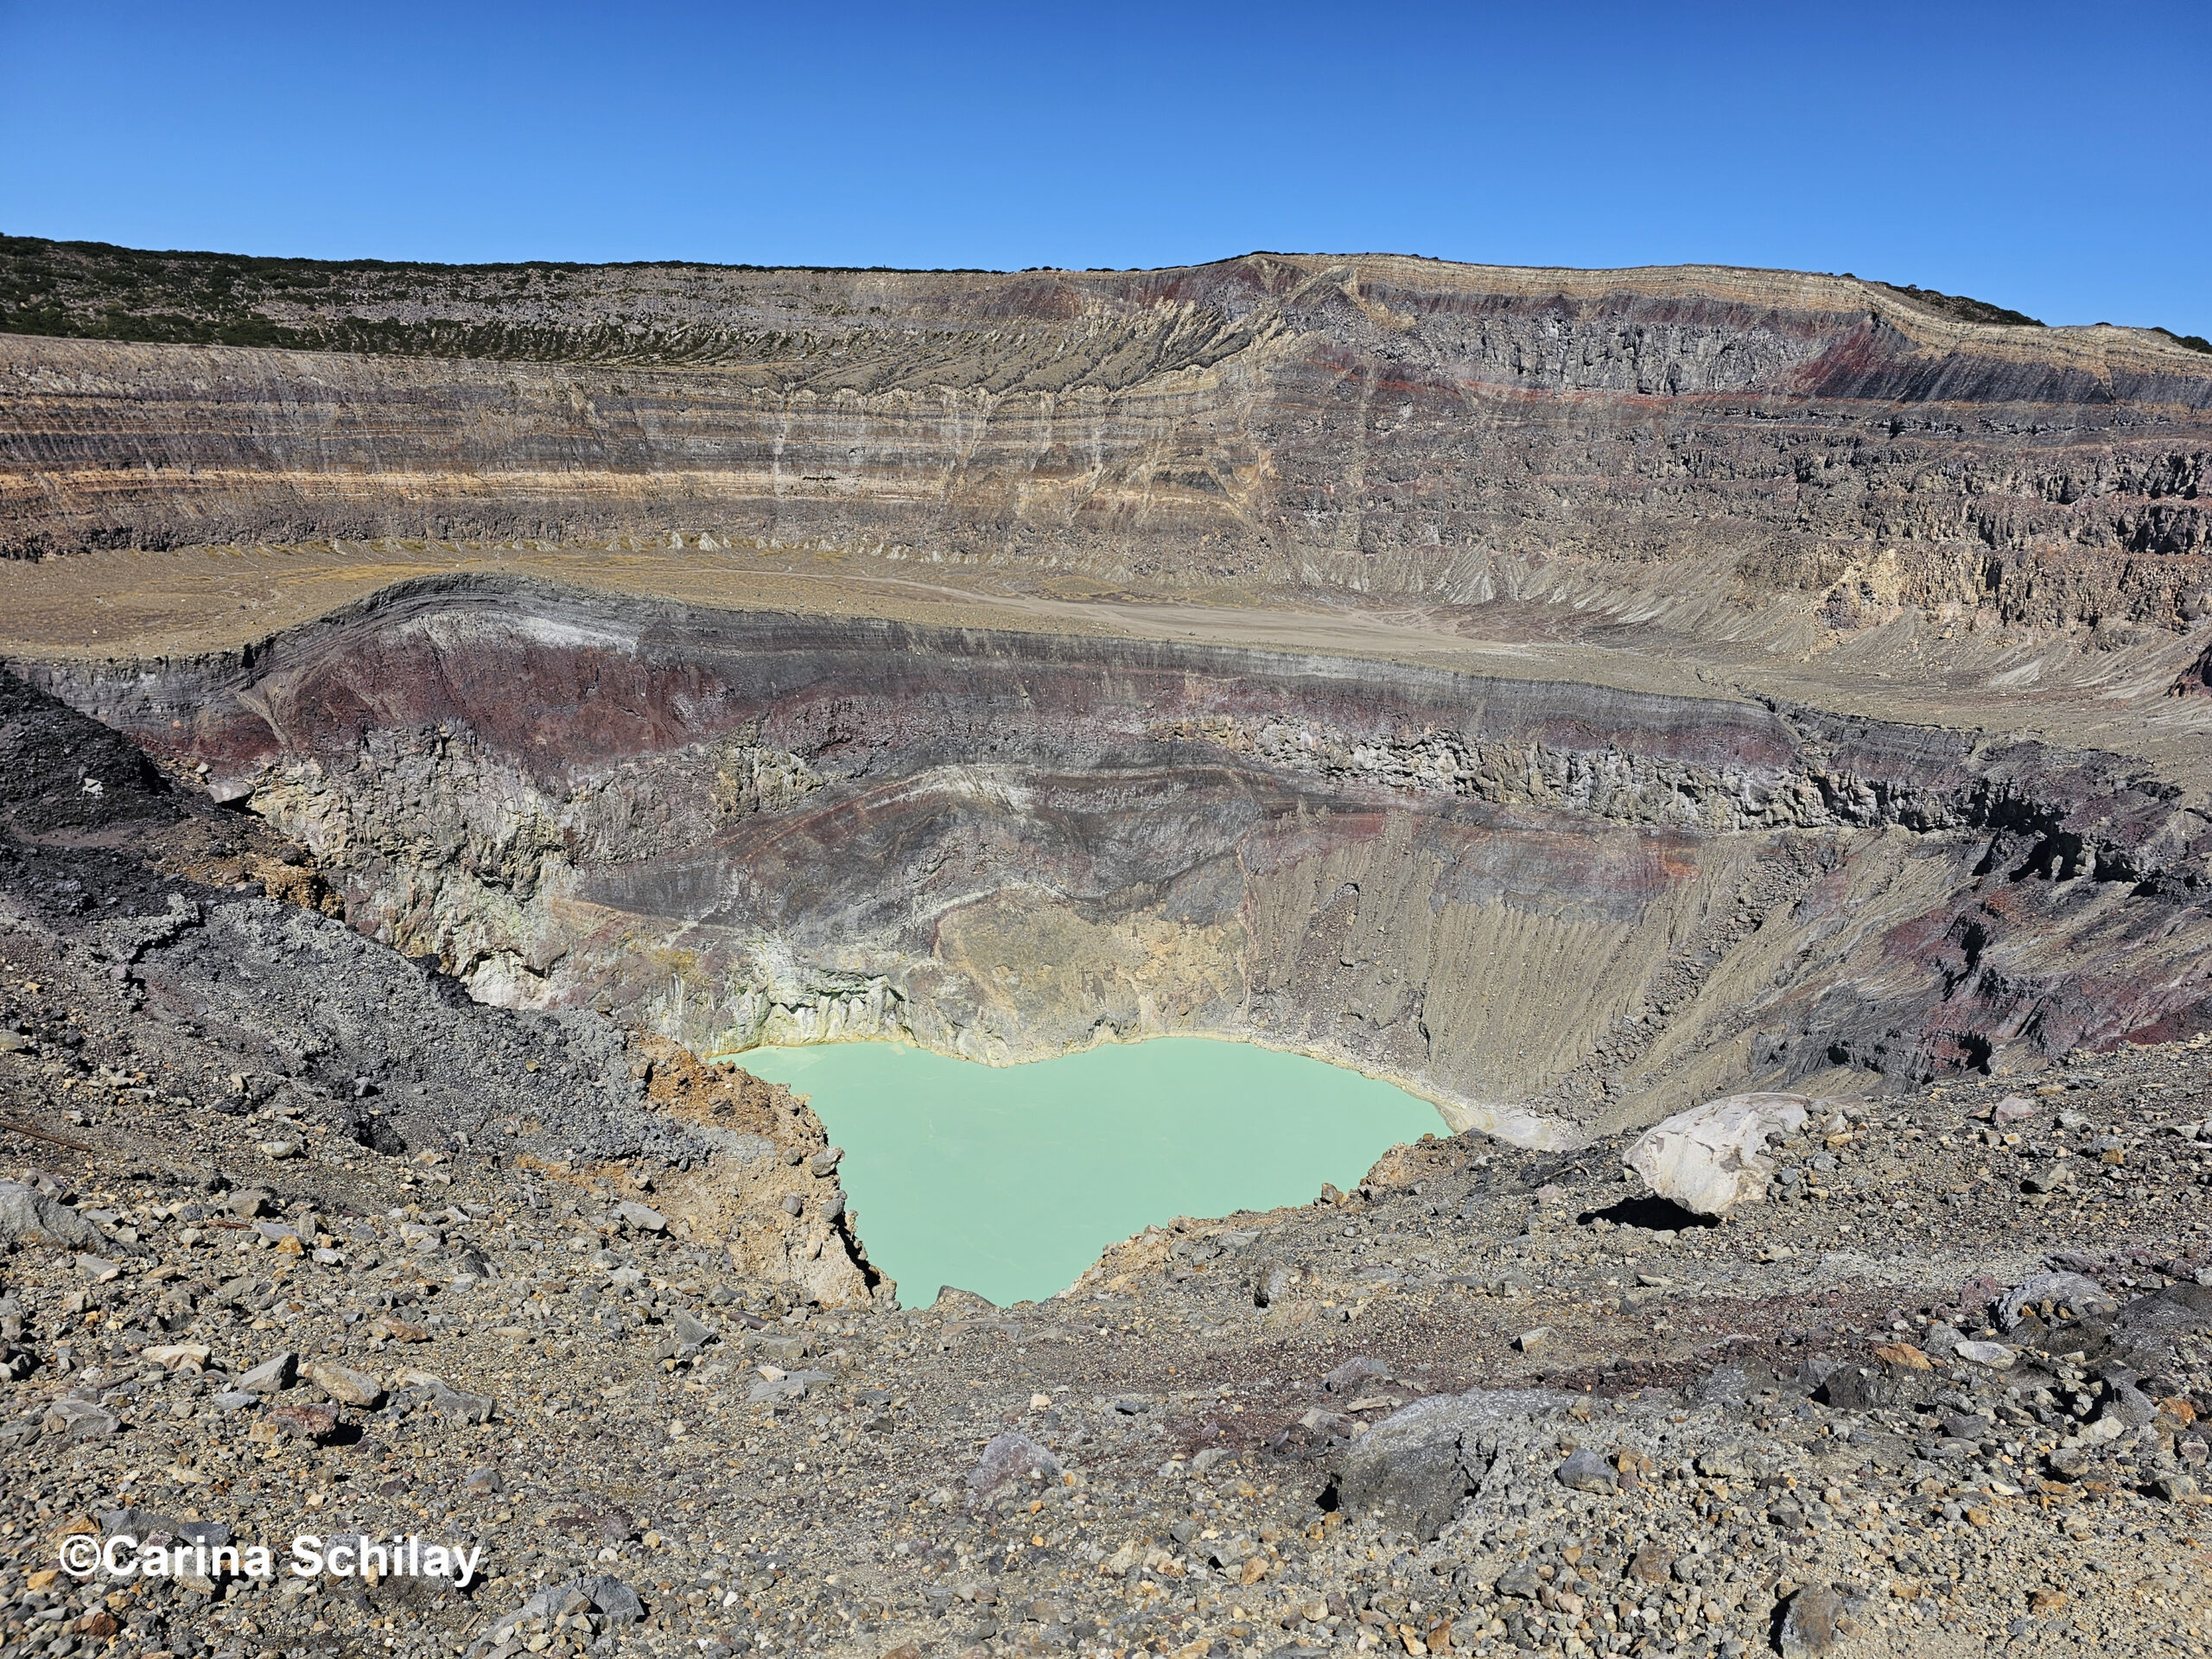 Der türkisfarbene Kratersee des Santa Ana Vulkans, umgeben von rauer Vulkanlandschaft.